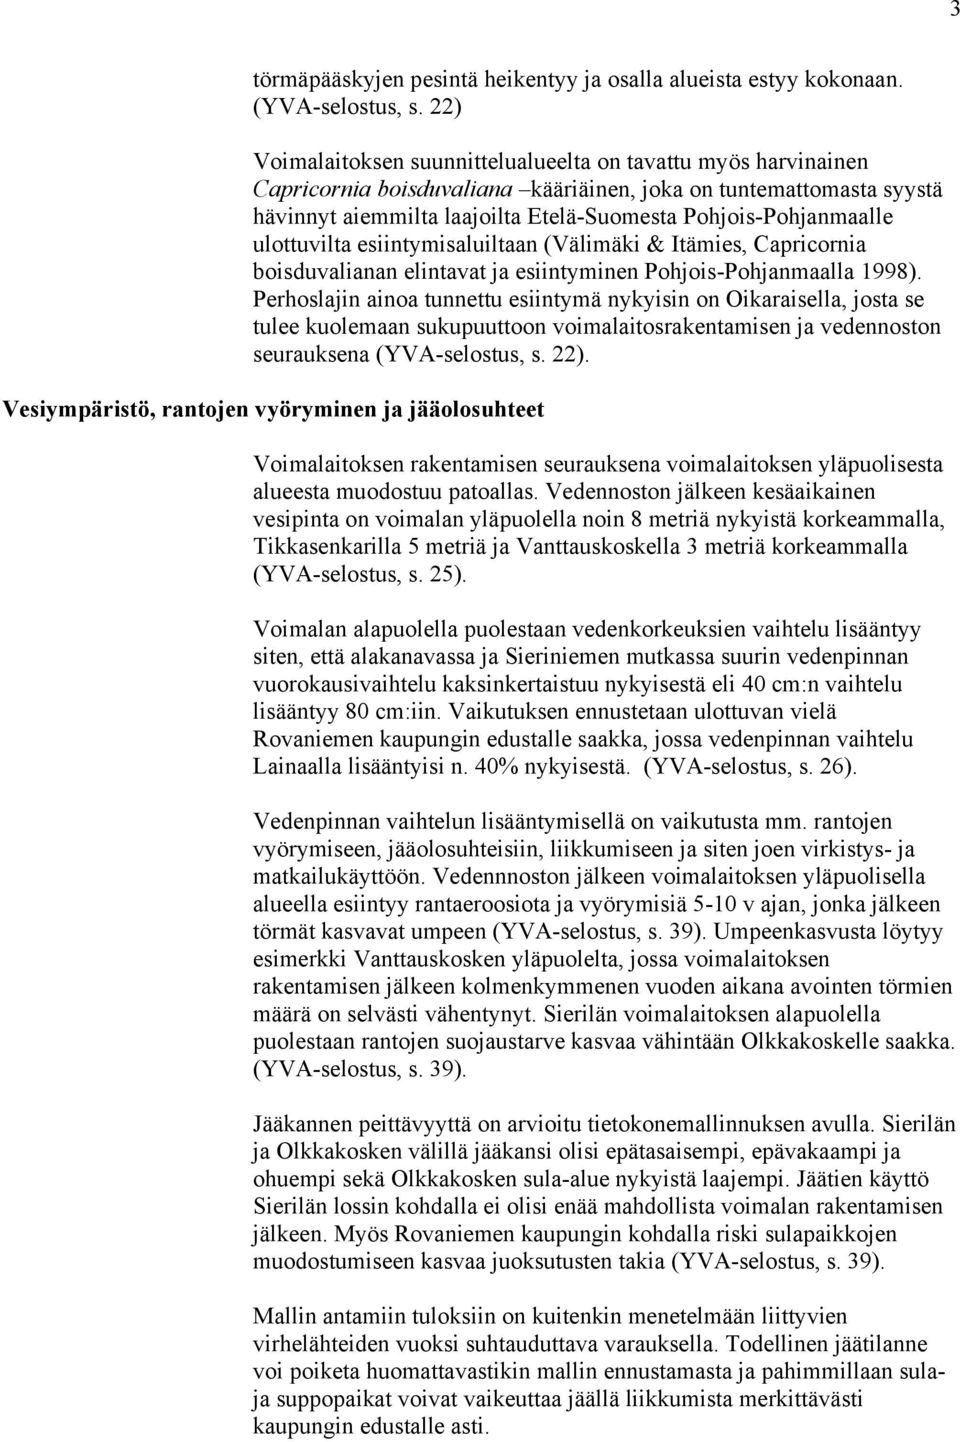 Pohjois-Pohjanmaalle ulottuvilta esiintymisaluiltaan (Välimäki & Itämies, Capricornia boisduvalianan elintavat ja esiintyminen Pohjois-Pohjanmaalla 1998).